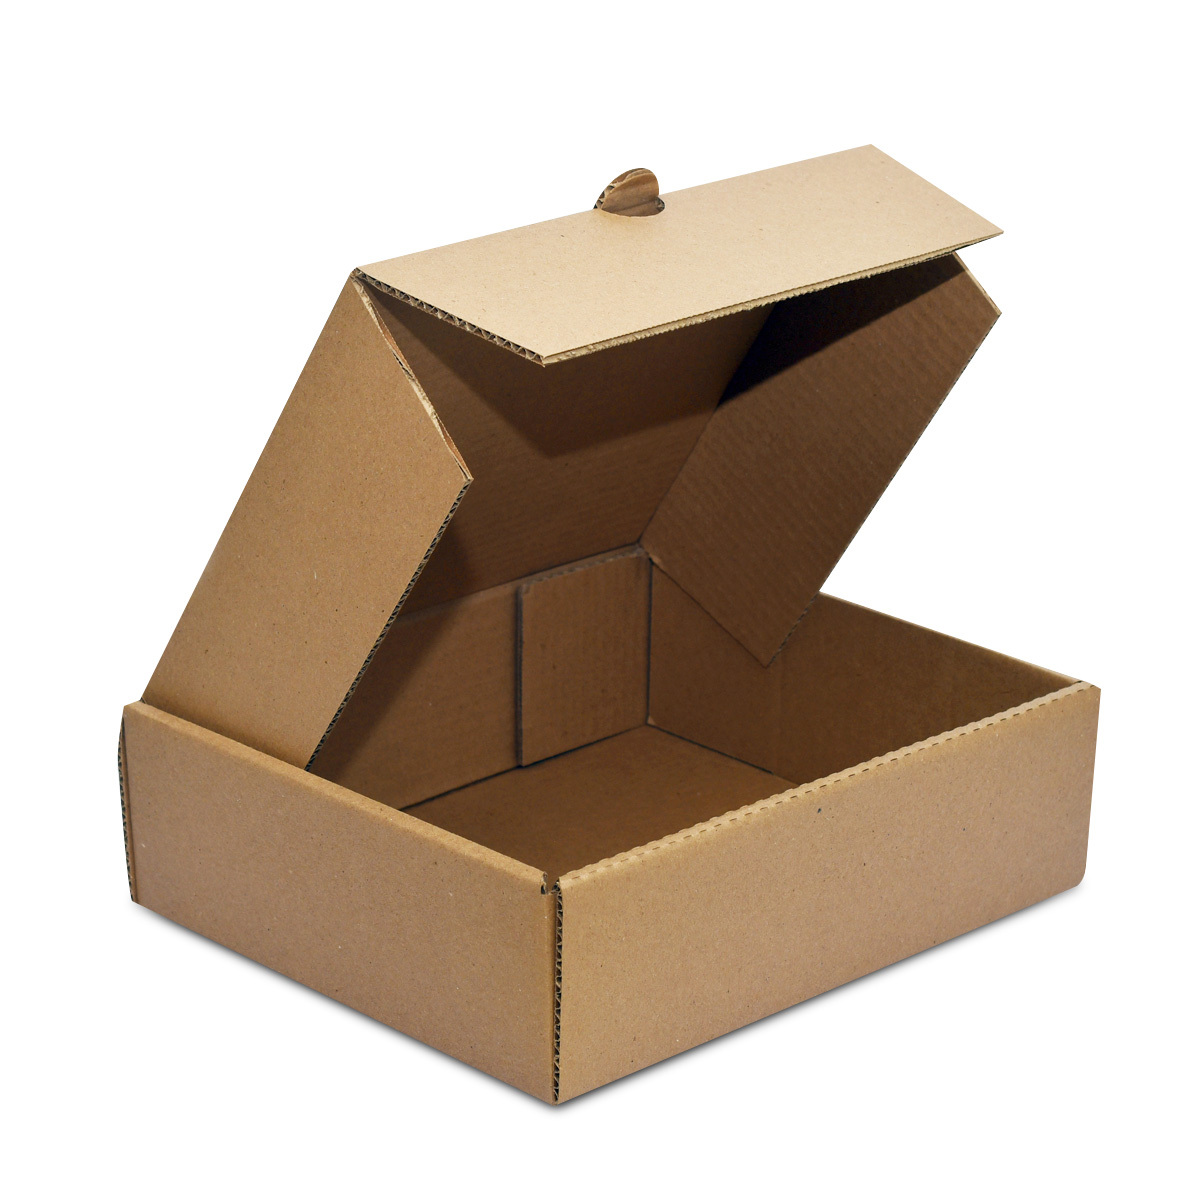 mayor Desplazamiento Amoroso Caja de Cartón Corrugado Delivery Pochteca 62545 Grande | Office Depot  Mexico